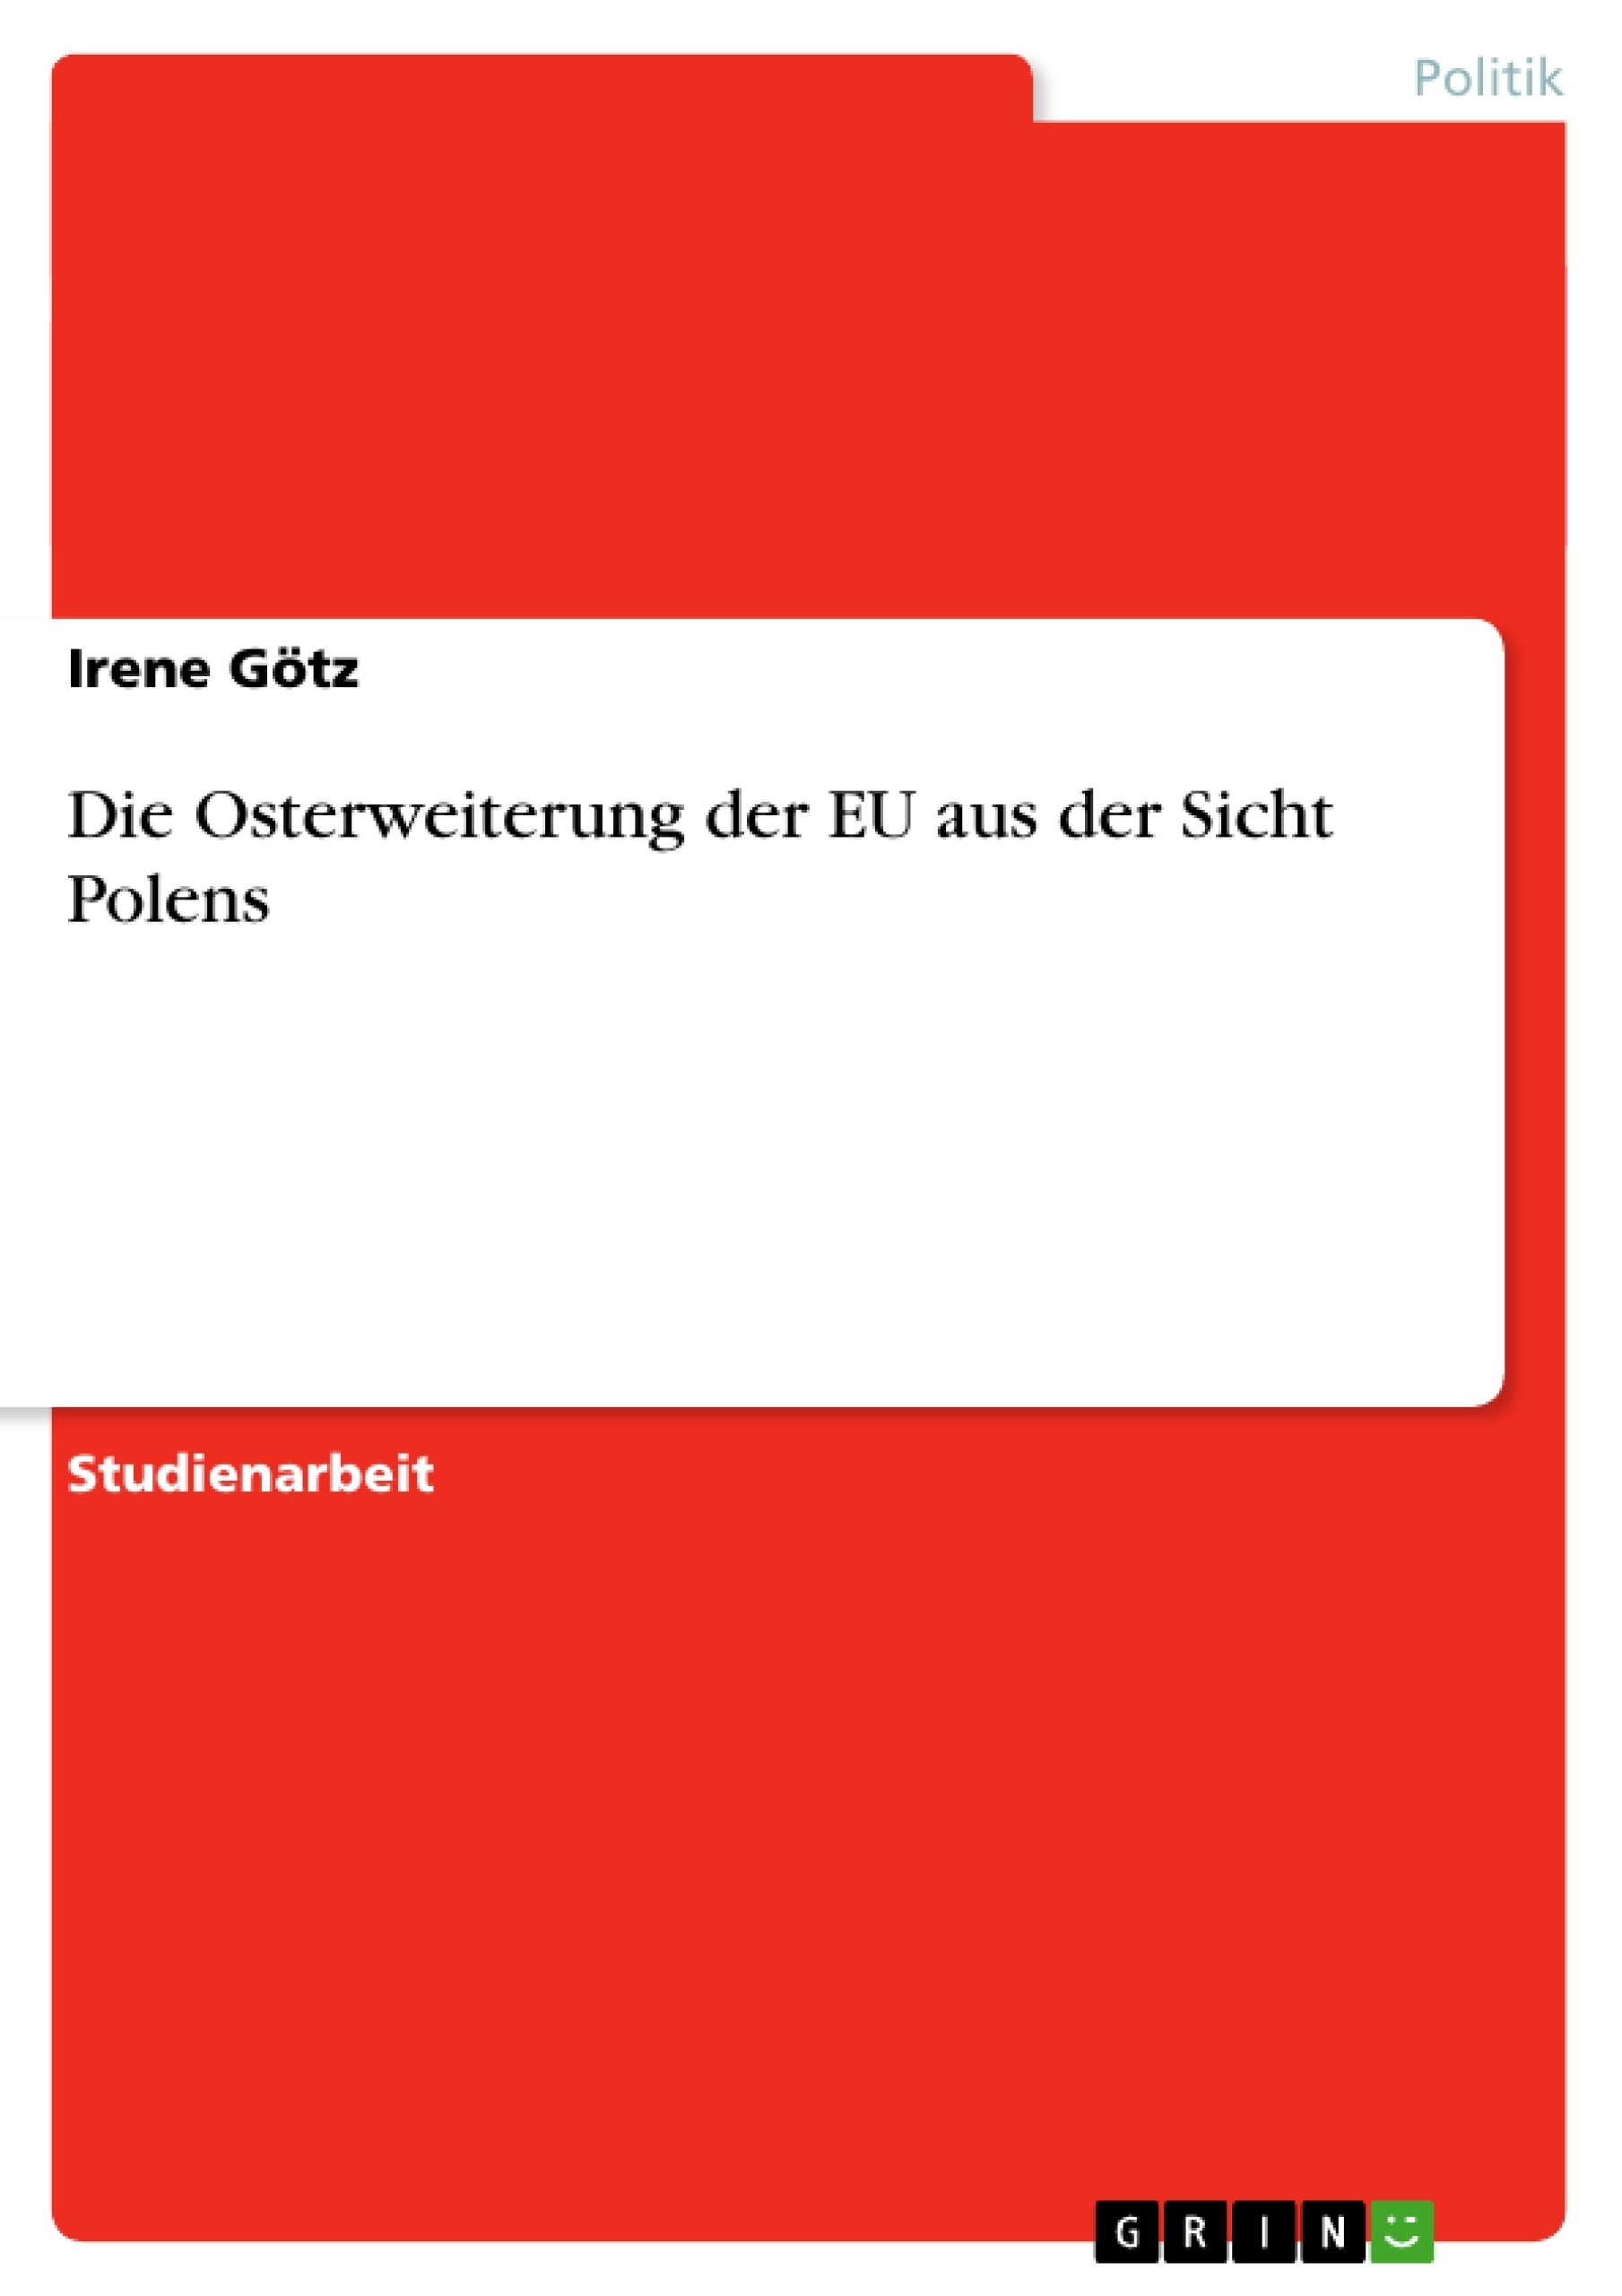 Titel: Die Osterweiterung der EU aus der Sicht Polens